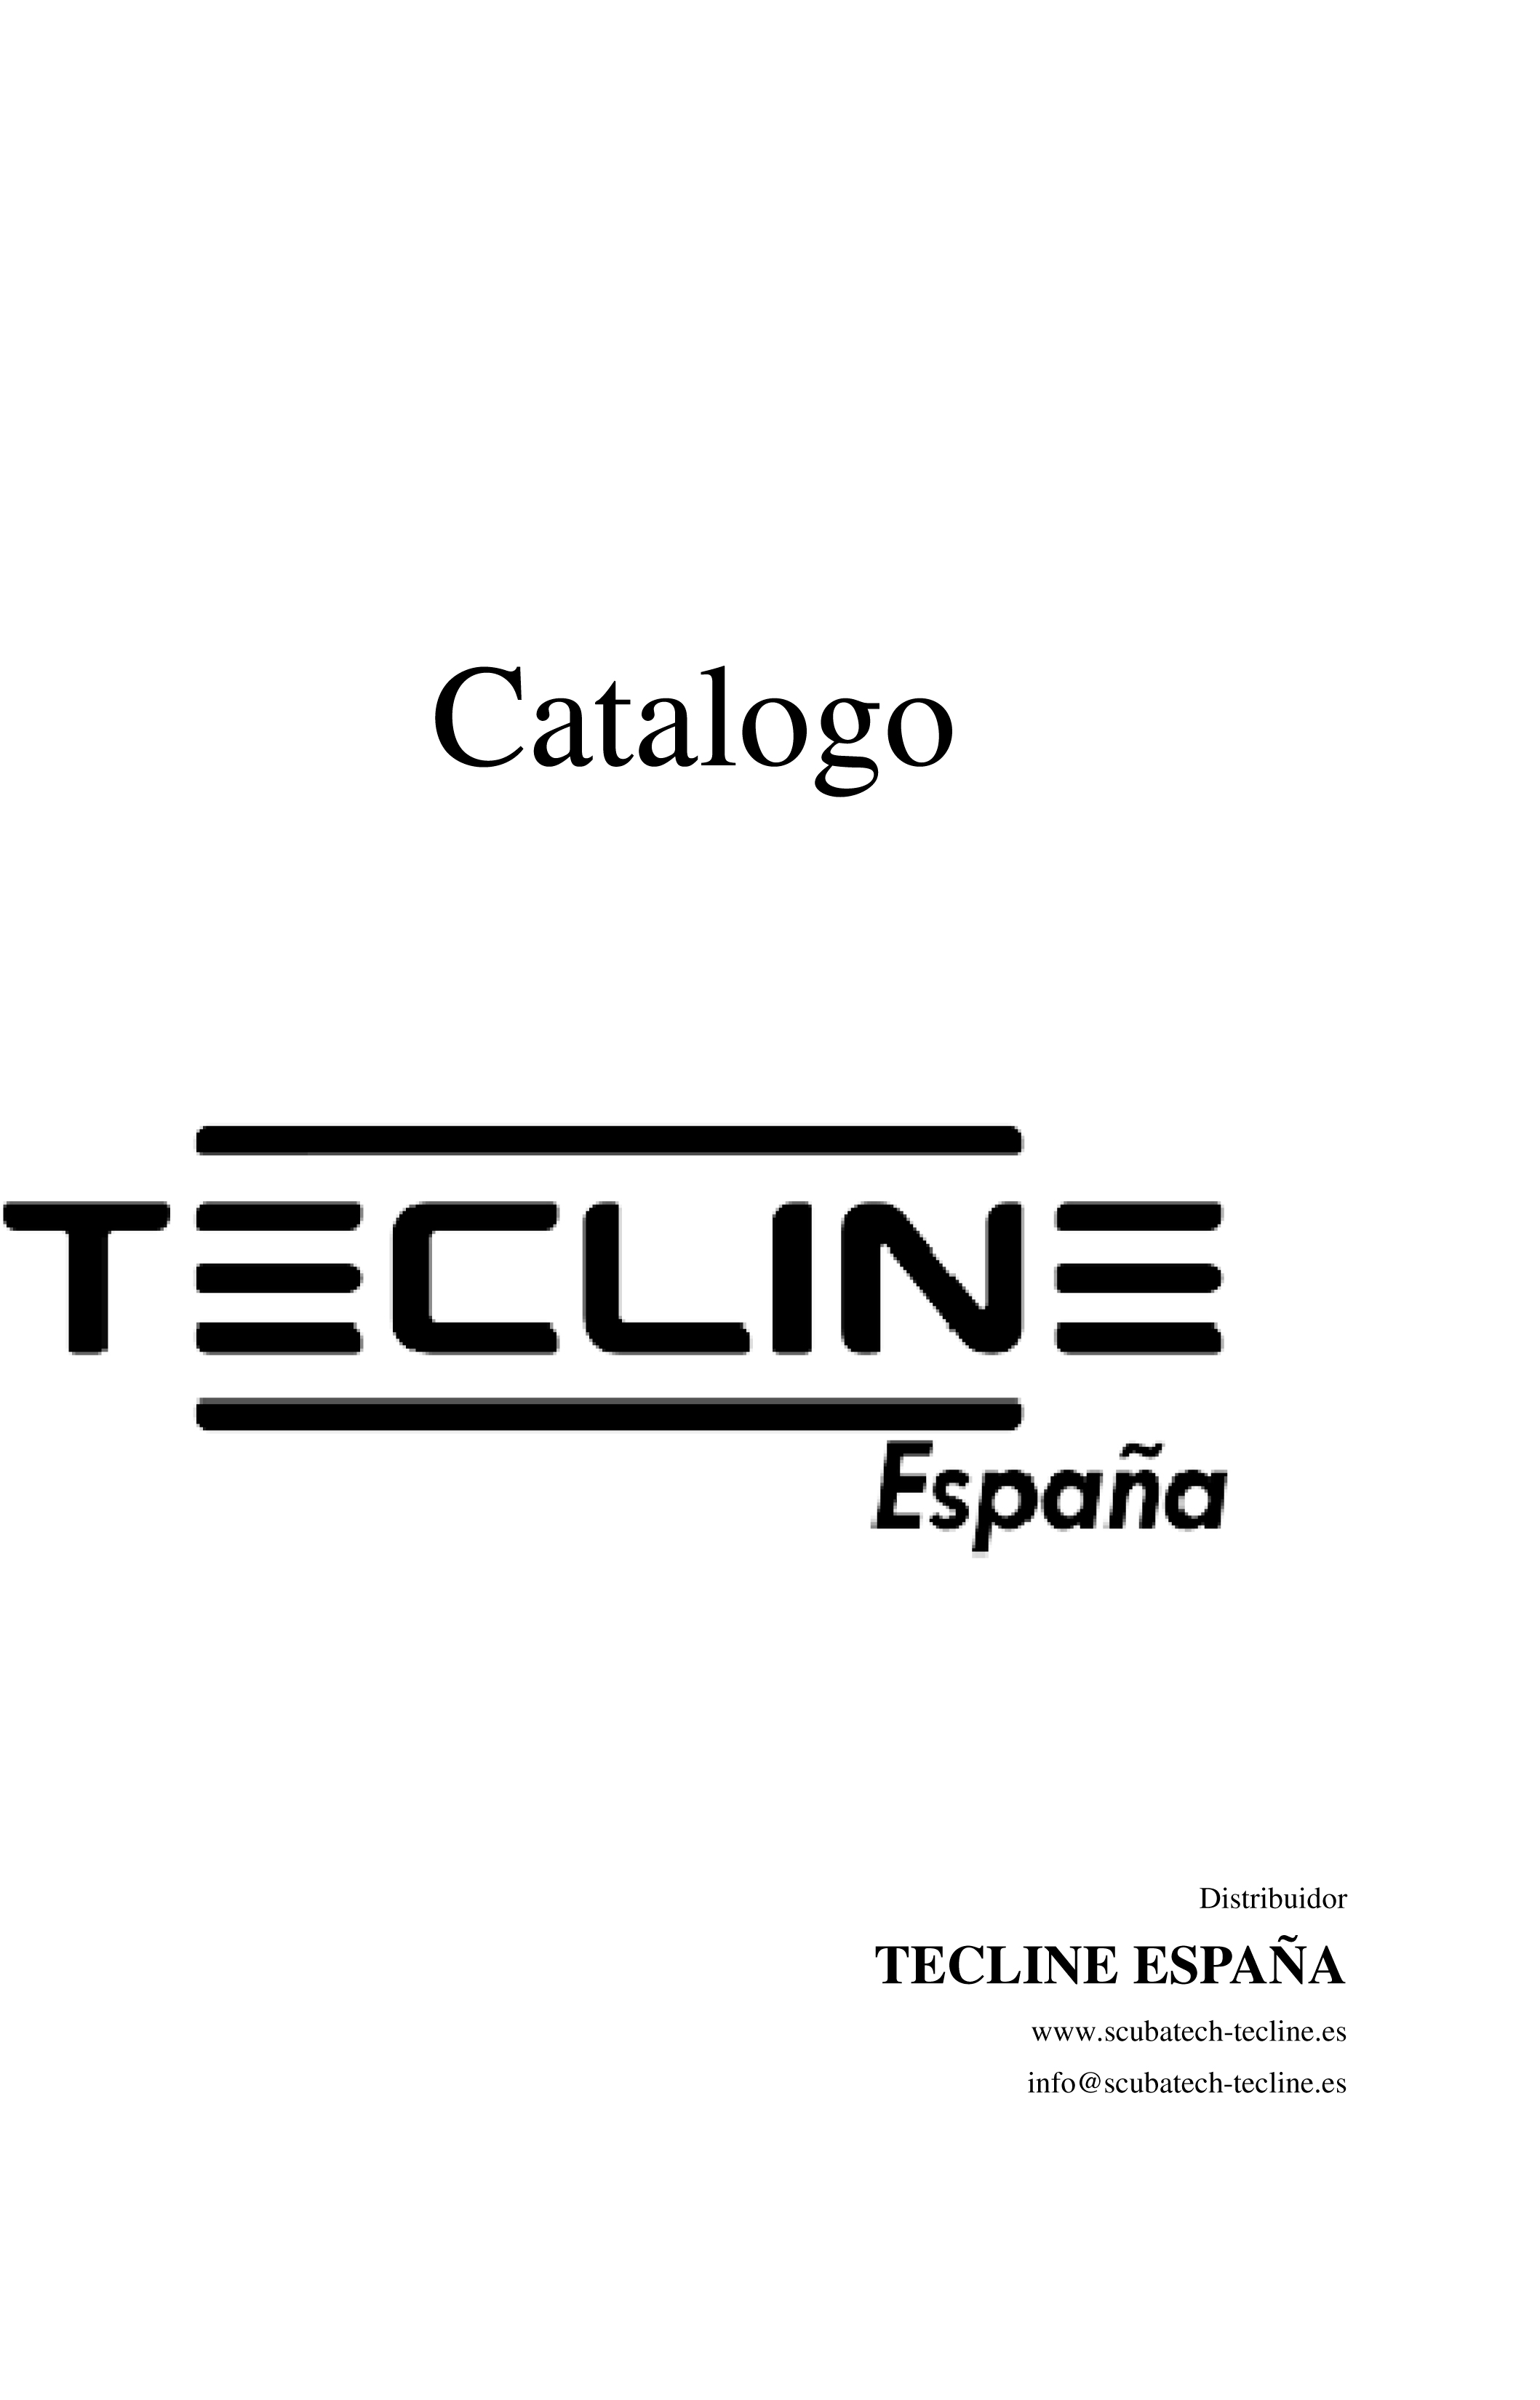 Catalogo-TECLINE-España-en-1